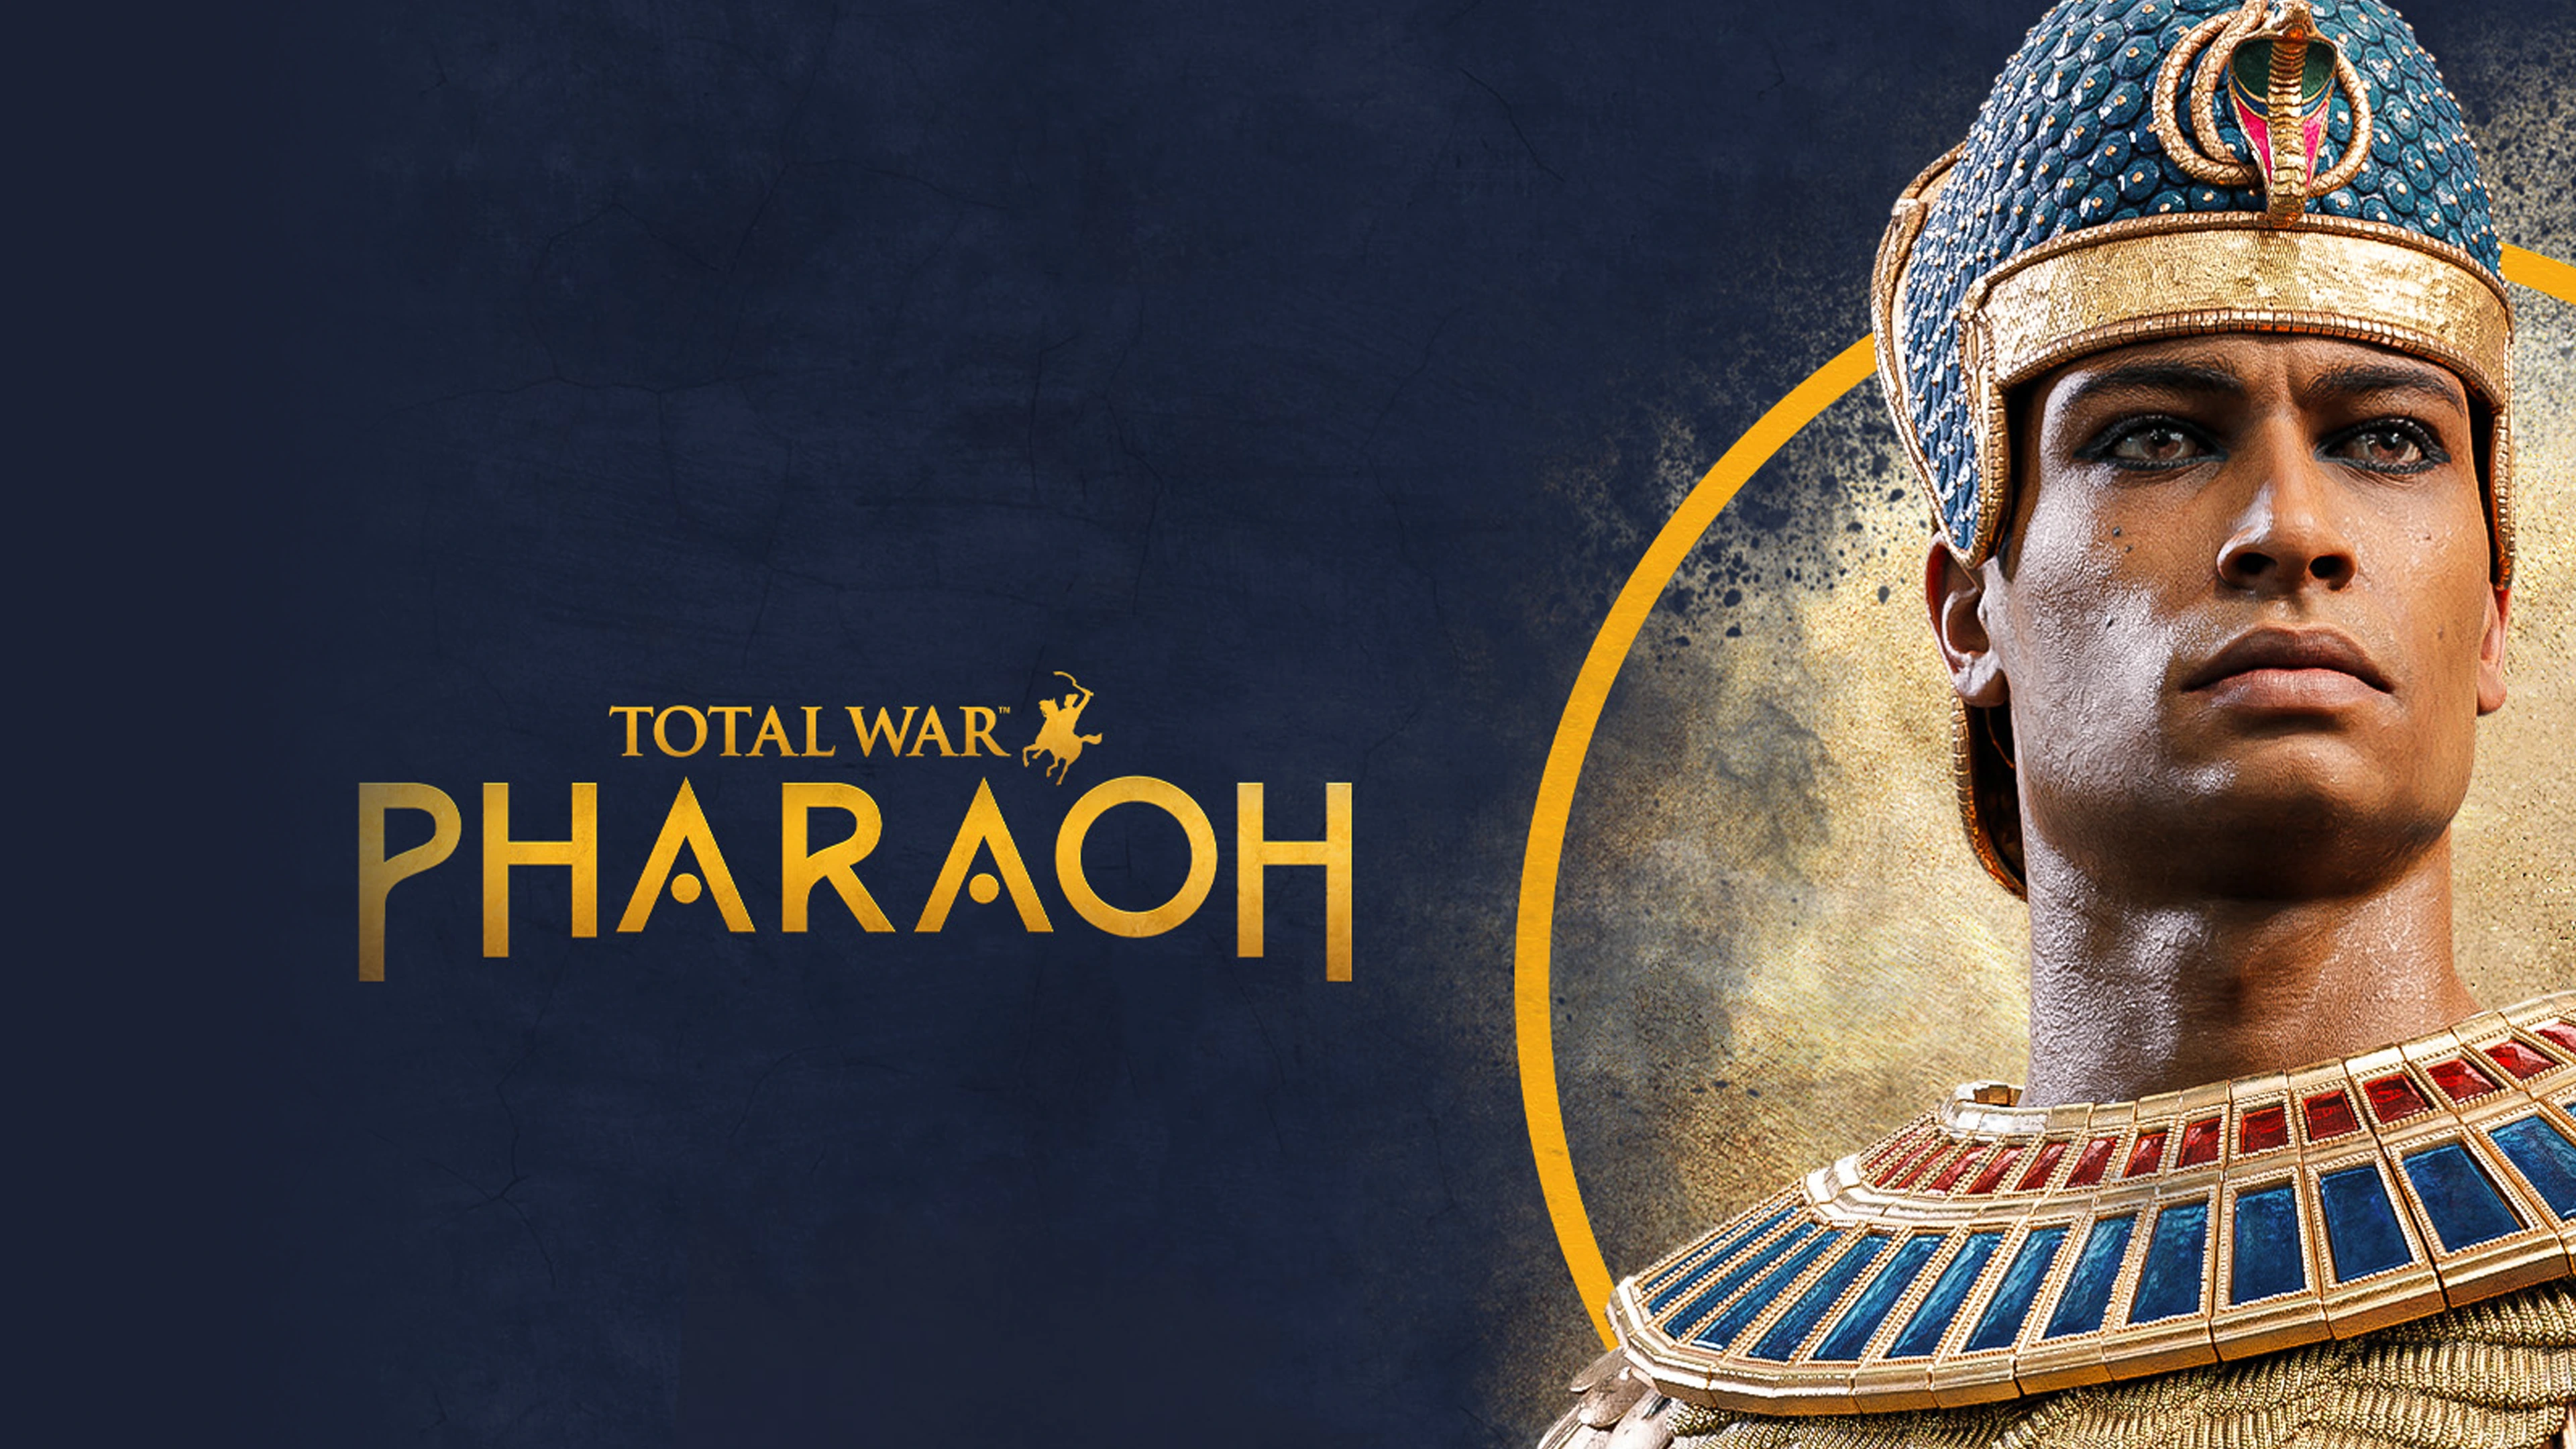 Total War™: Pharaoh